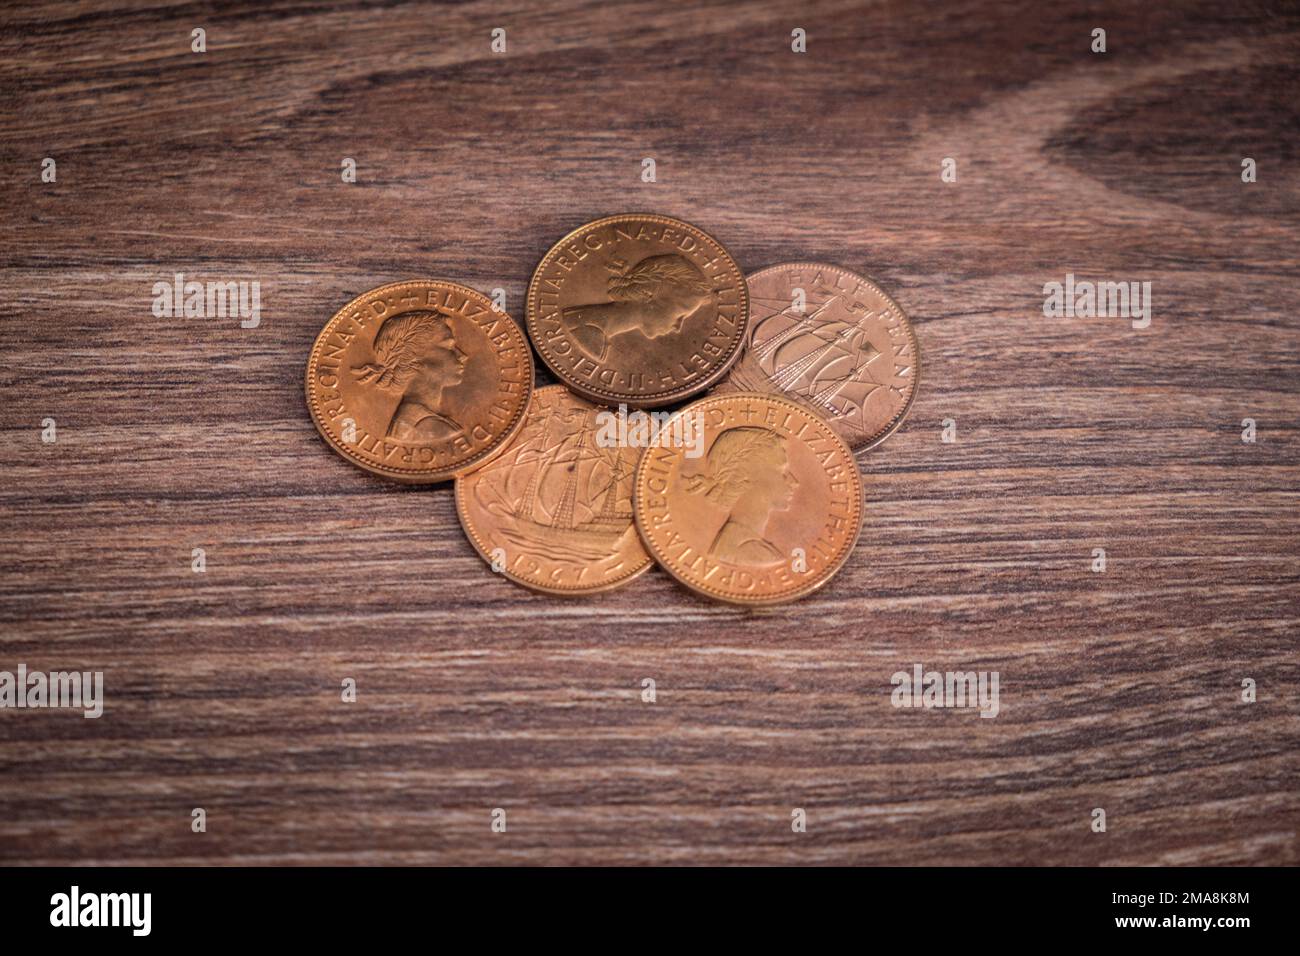 Gama de aspecto vintage de medio centavo británico monedas (moneda del Reino Unido) Foto de stock